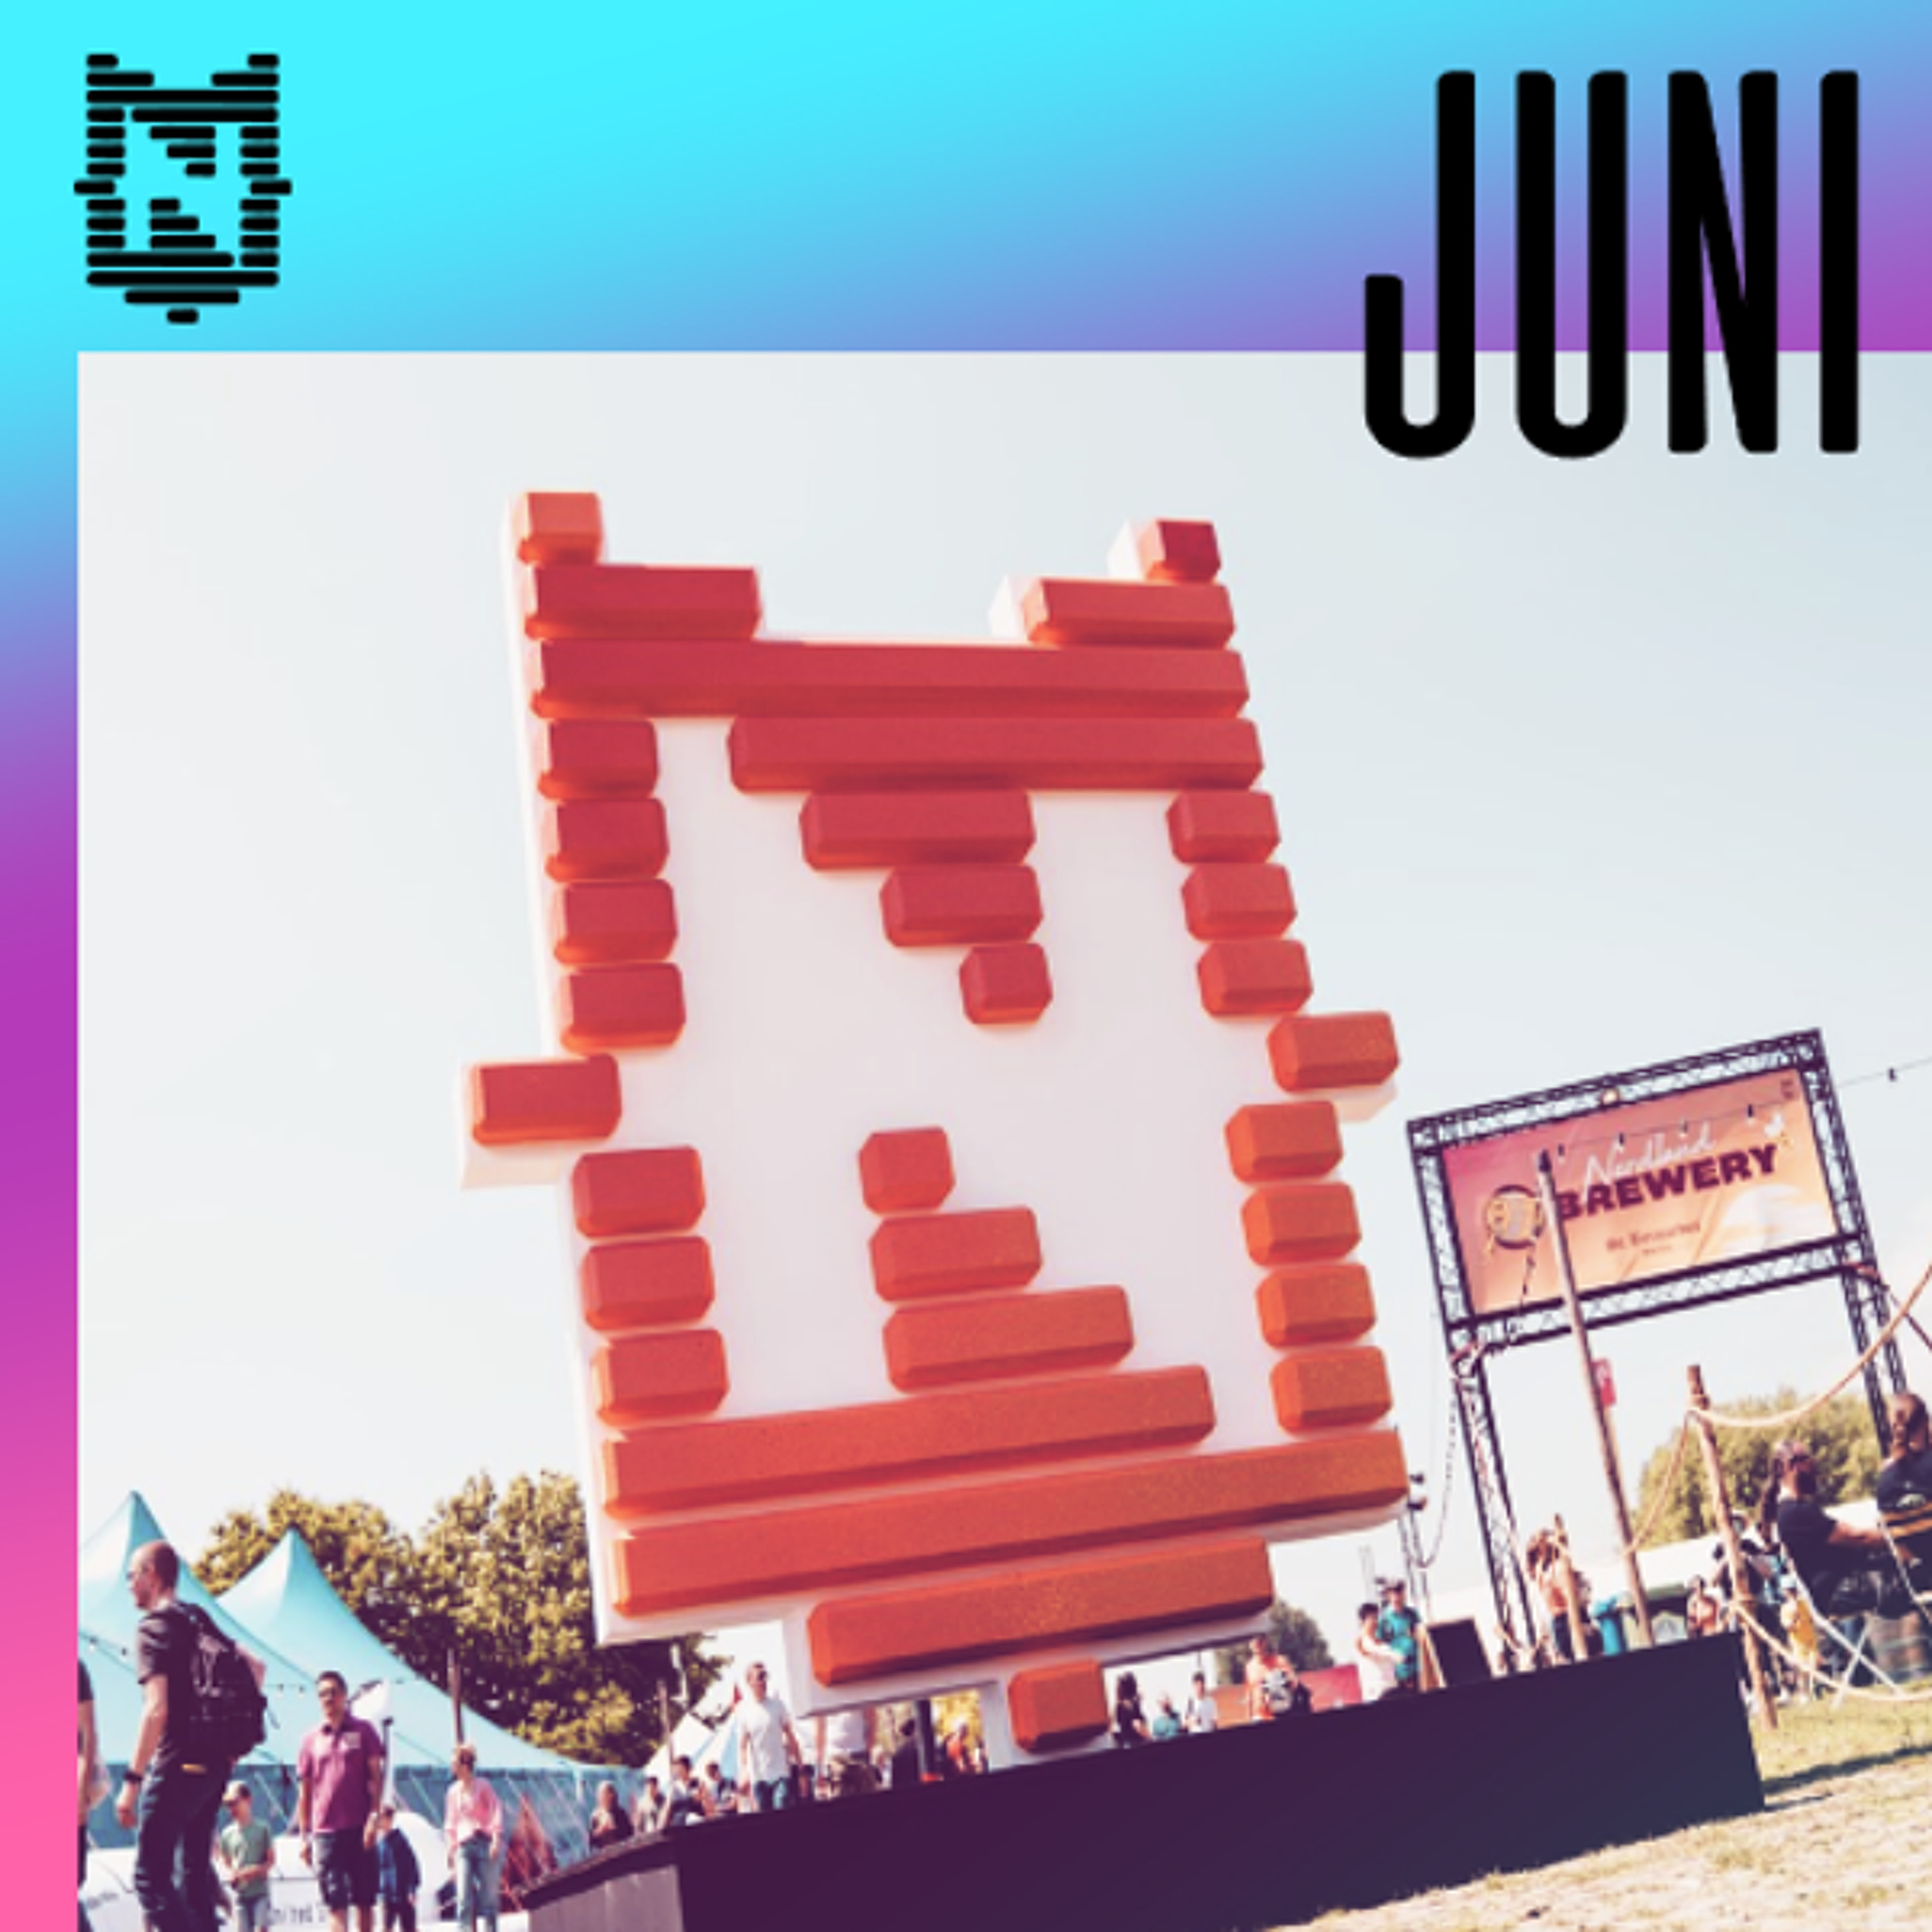 Nerdland Maandoverzicht: Juni 2022 (Live op Nerdland Festival)